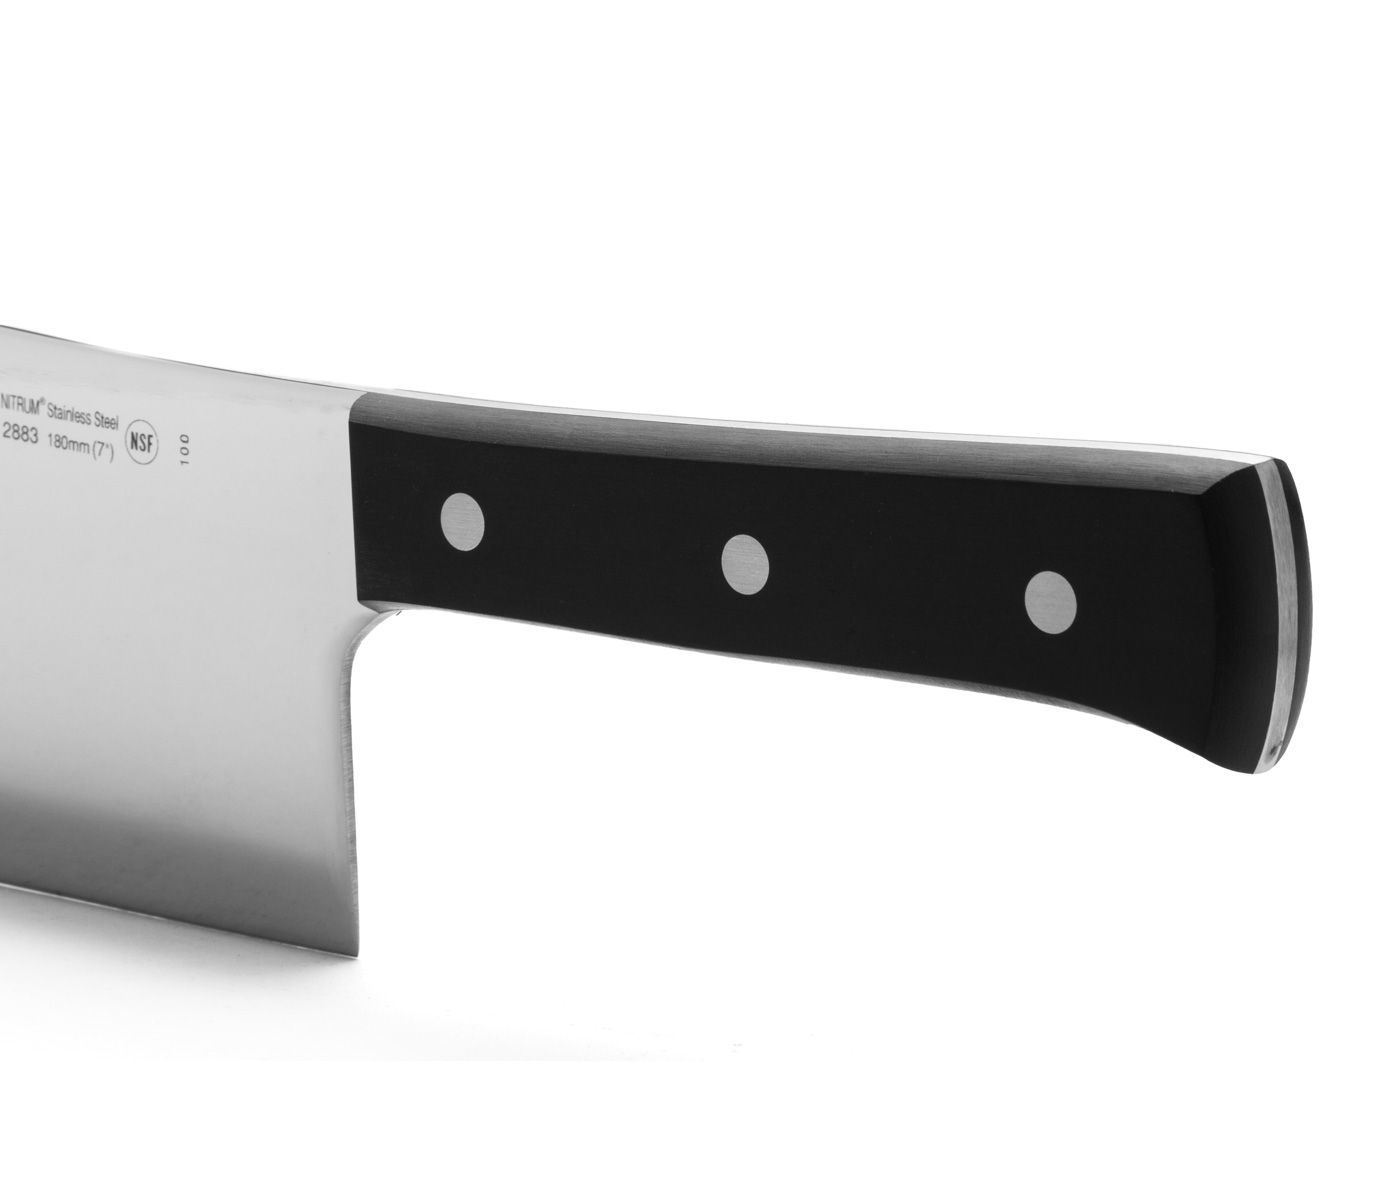 Couteau couperet Universal - Arcos-T.A DEFENSE